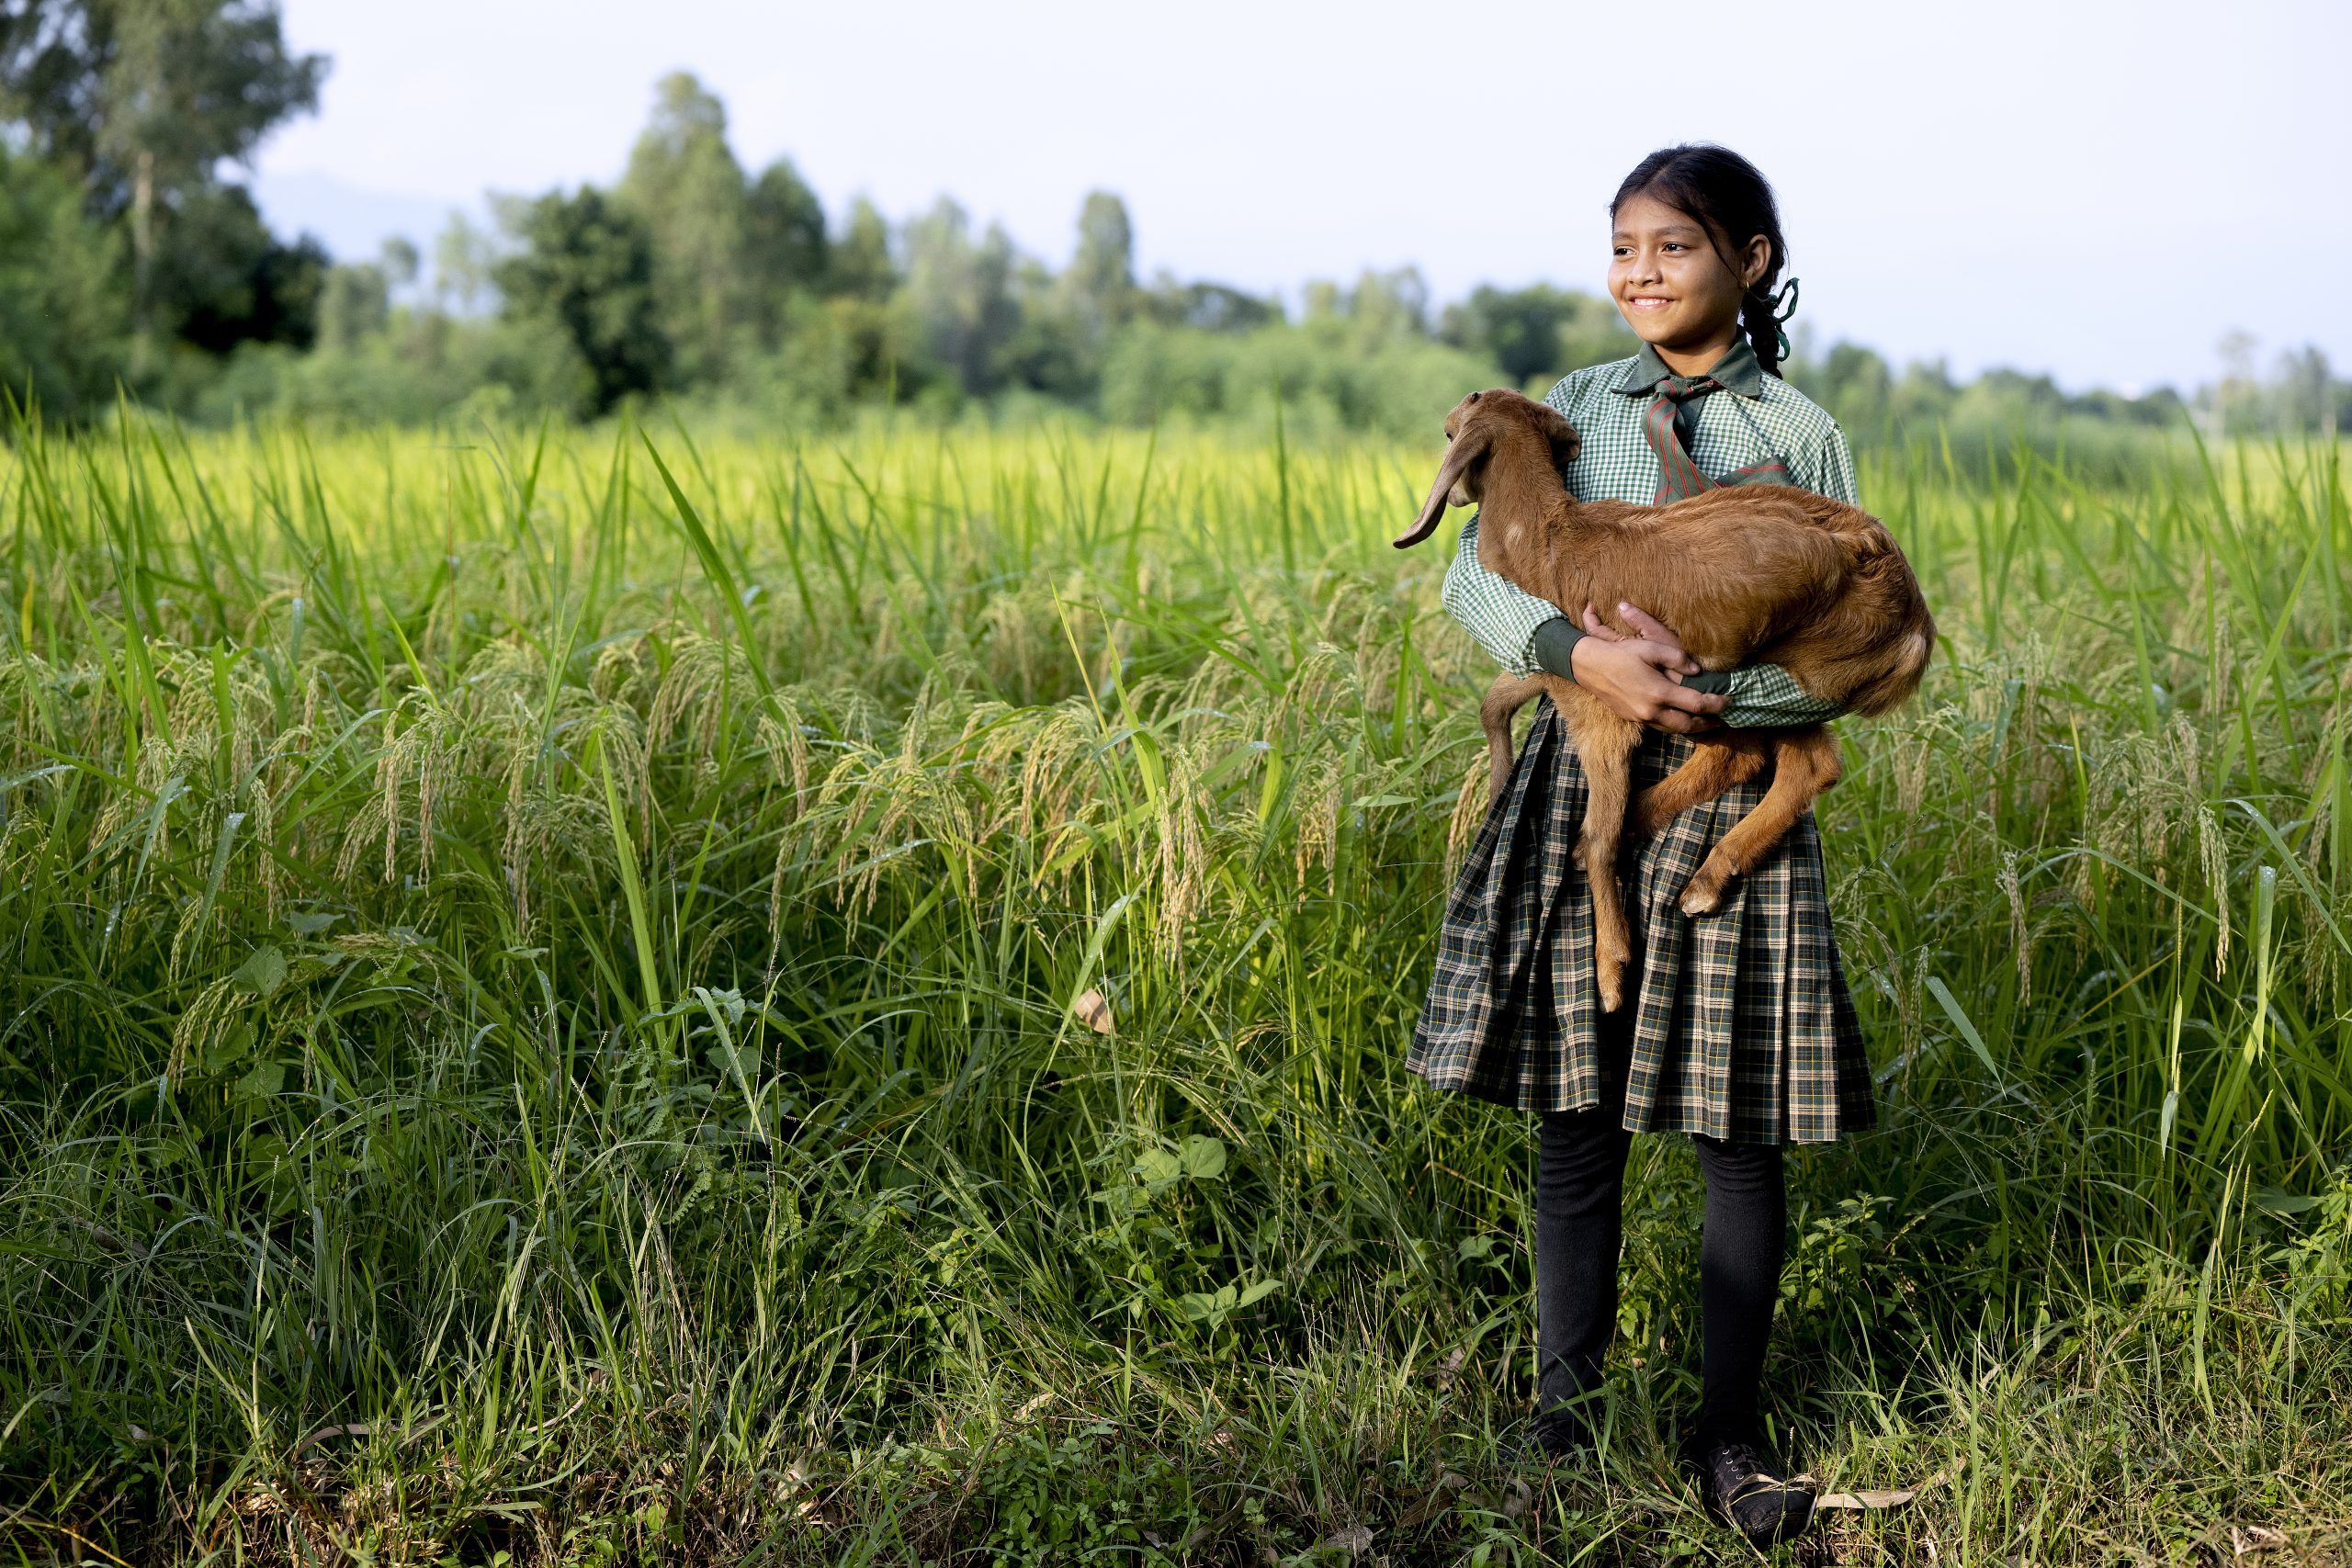 Ung pige med ternet skjorte står med et gedekid i hænderne på en græsmark